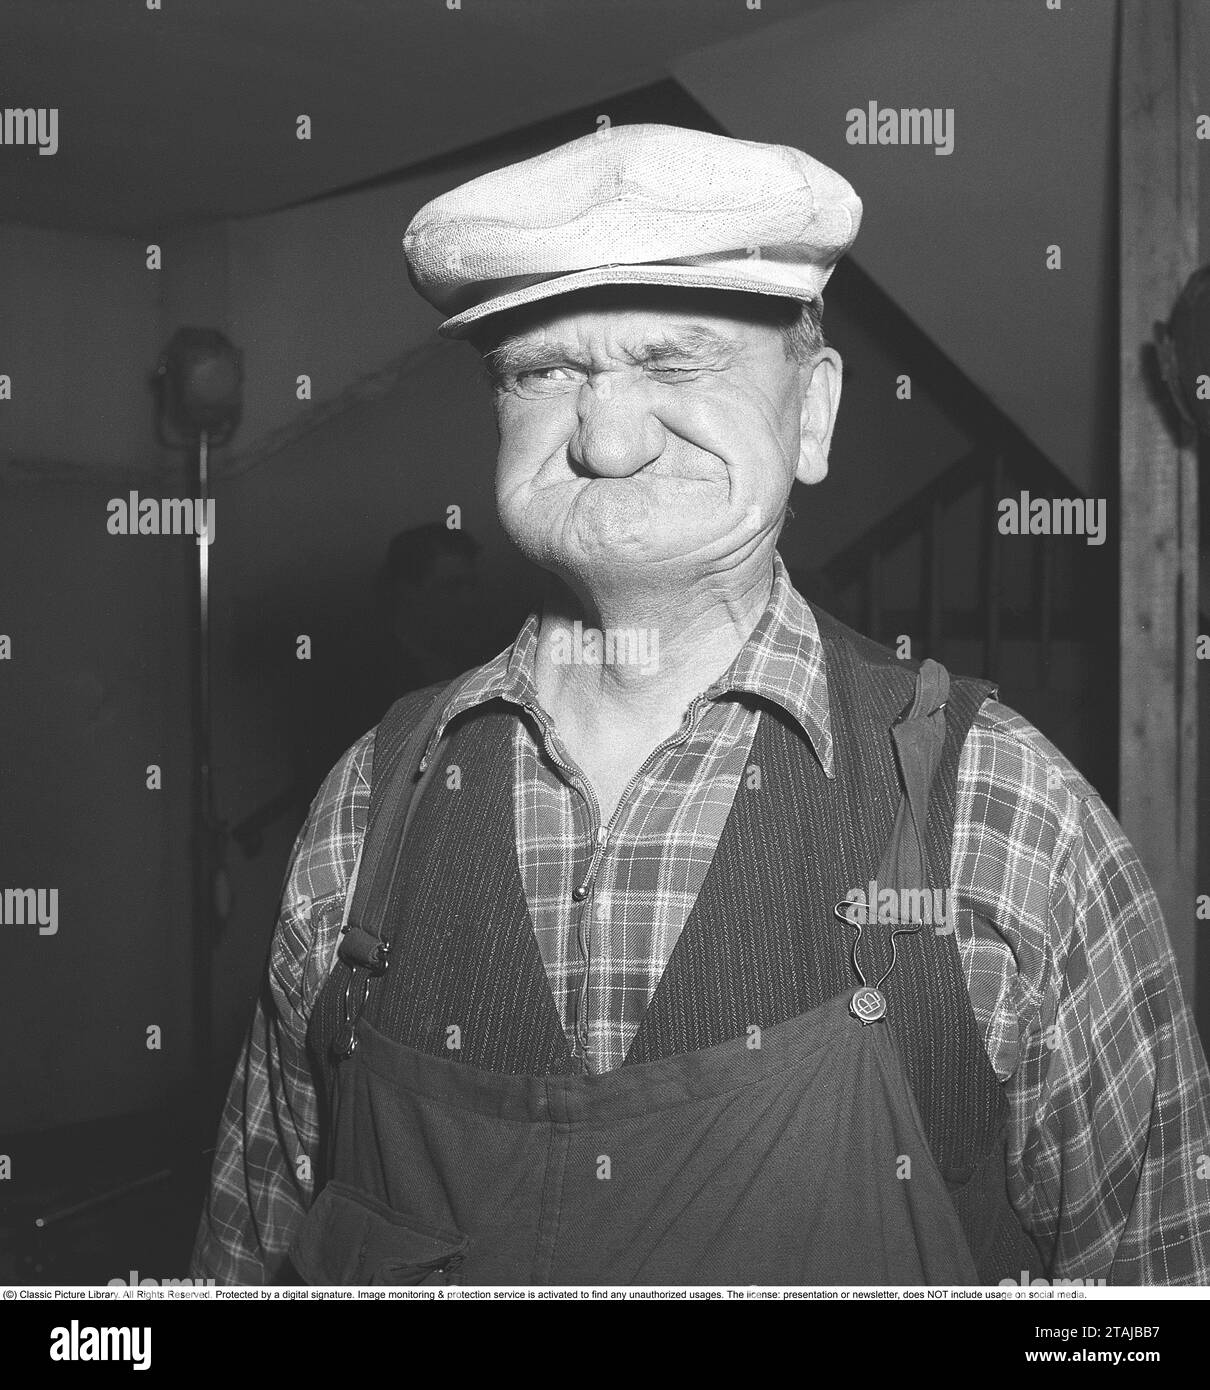 In den 1940er Jahren Der ältere Mann hat eine weiße Mütze auf dem Kopf und macht ein lustiges Gesicht. Schweden 1947. ref. AA46-3 Stockfoto